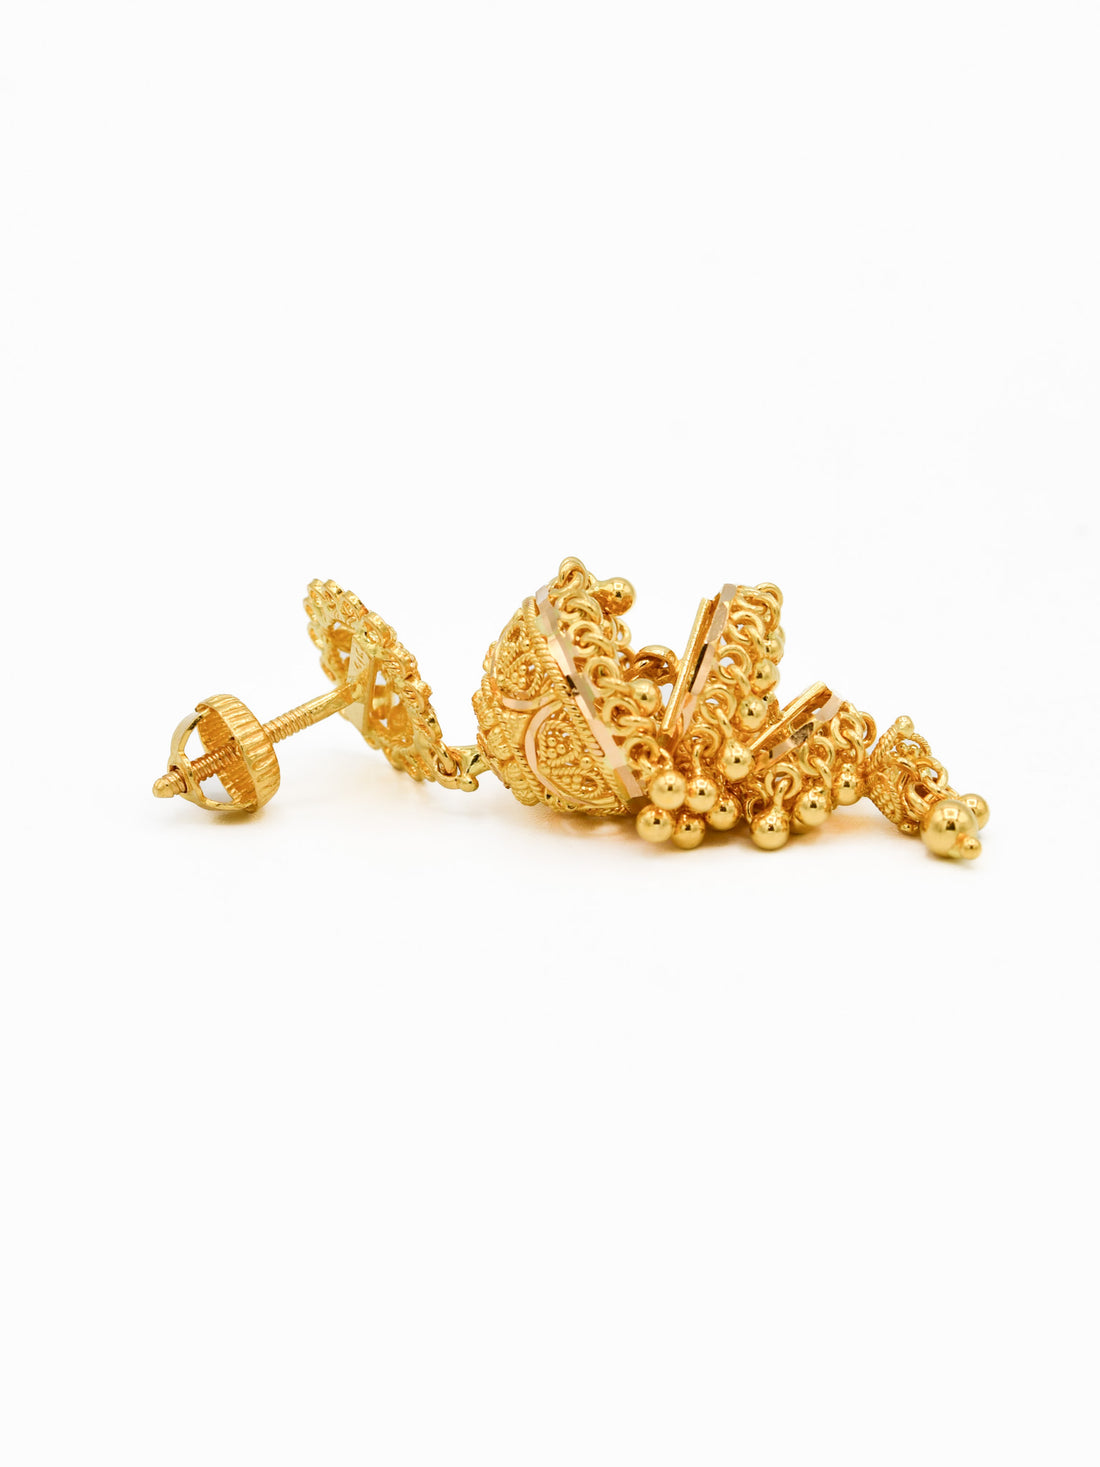 22ct Gold 4 Layer Jhumki Earrings - Roop Darshan